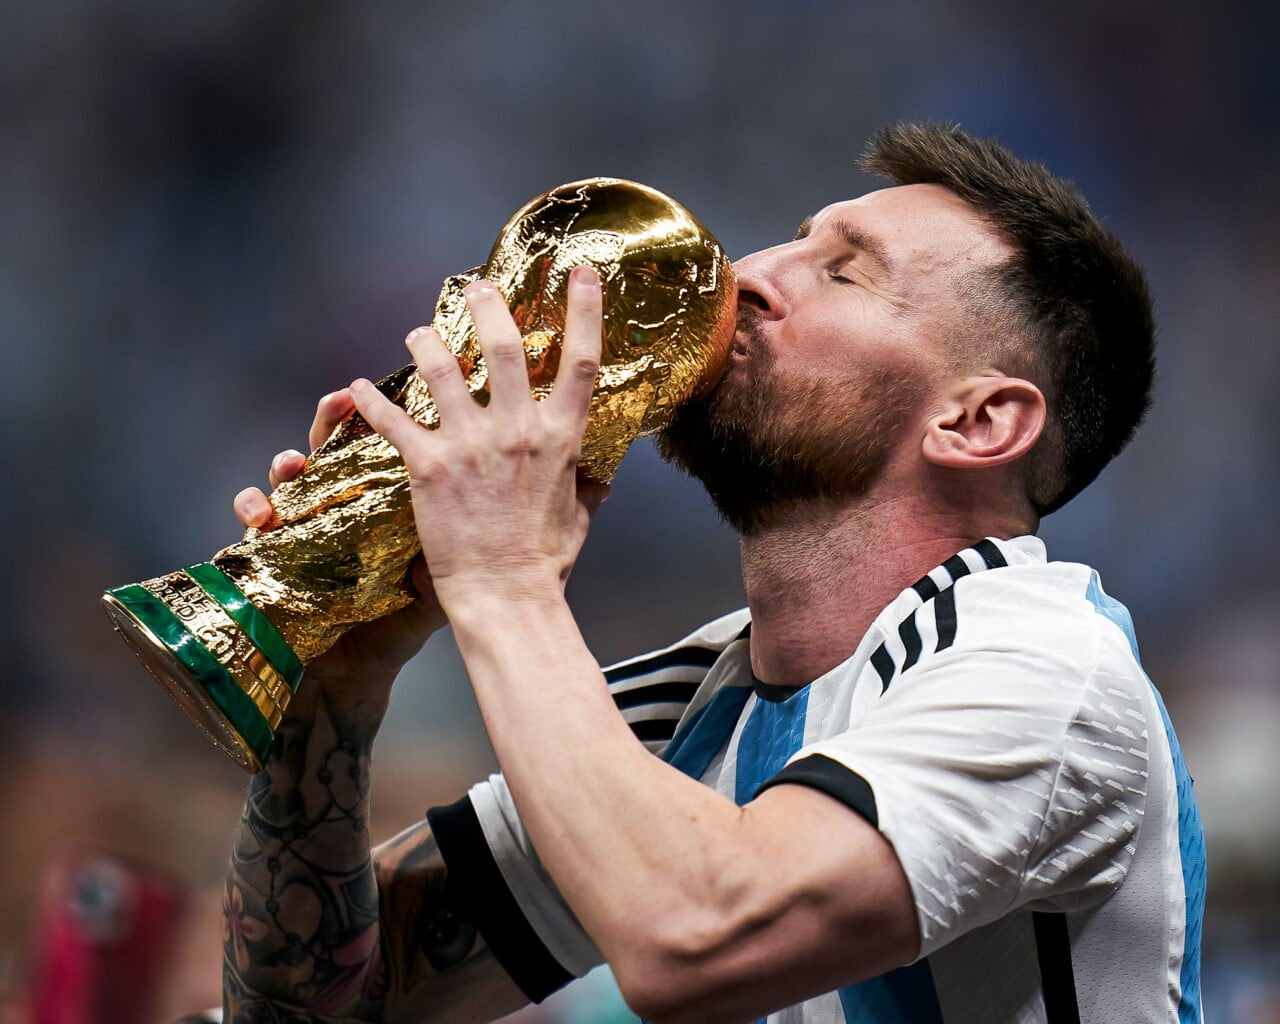 Leo Messi zapisuje się w historii futbolu i Instagrama